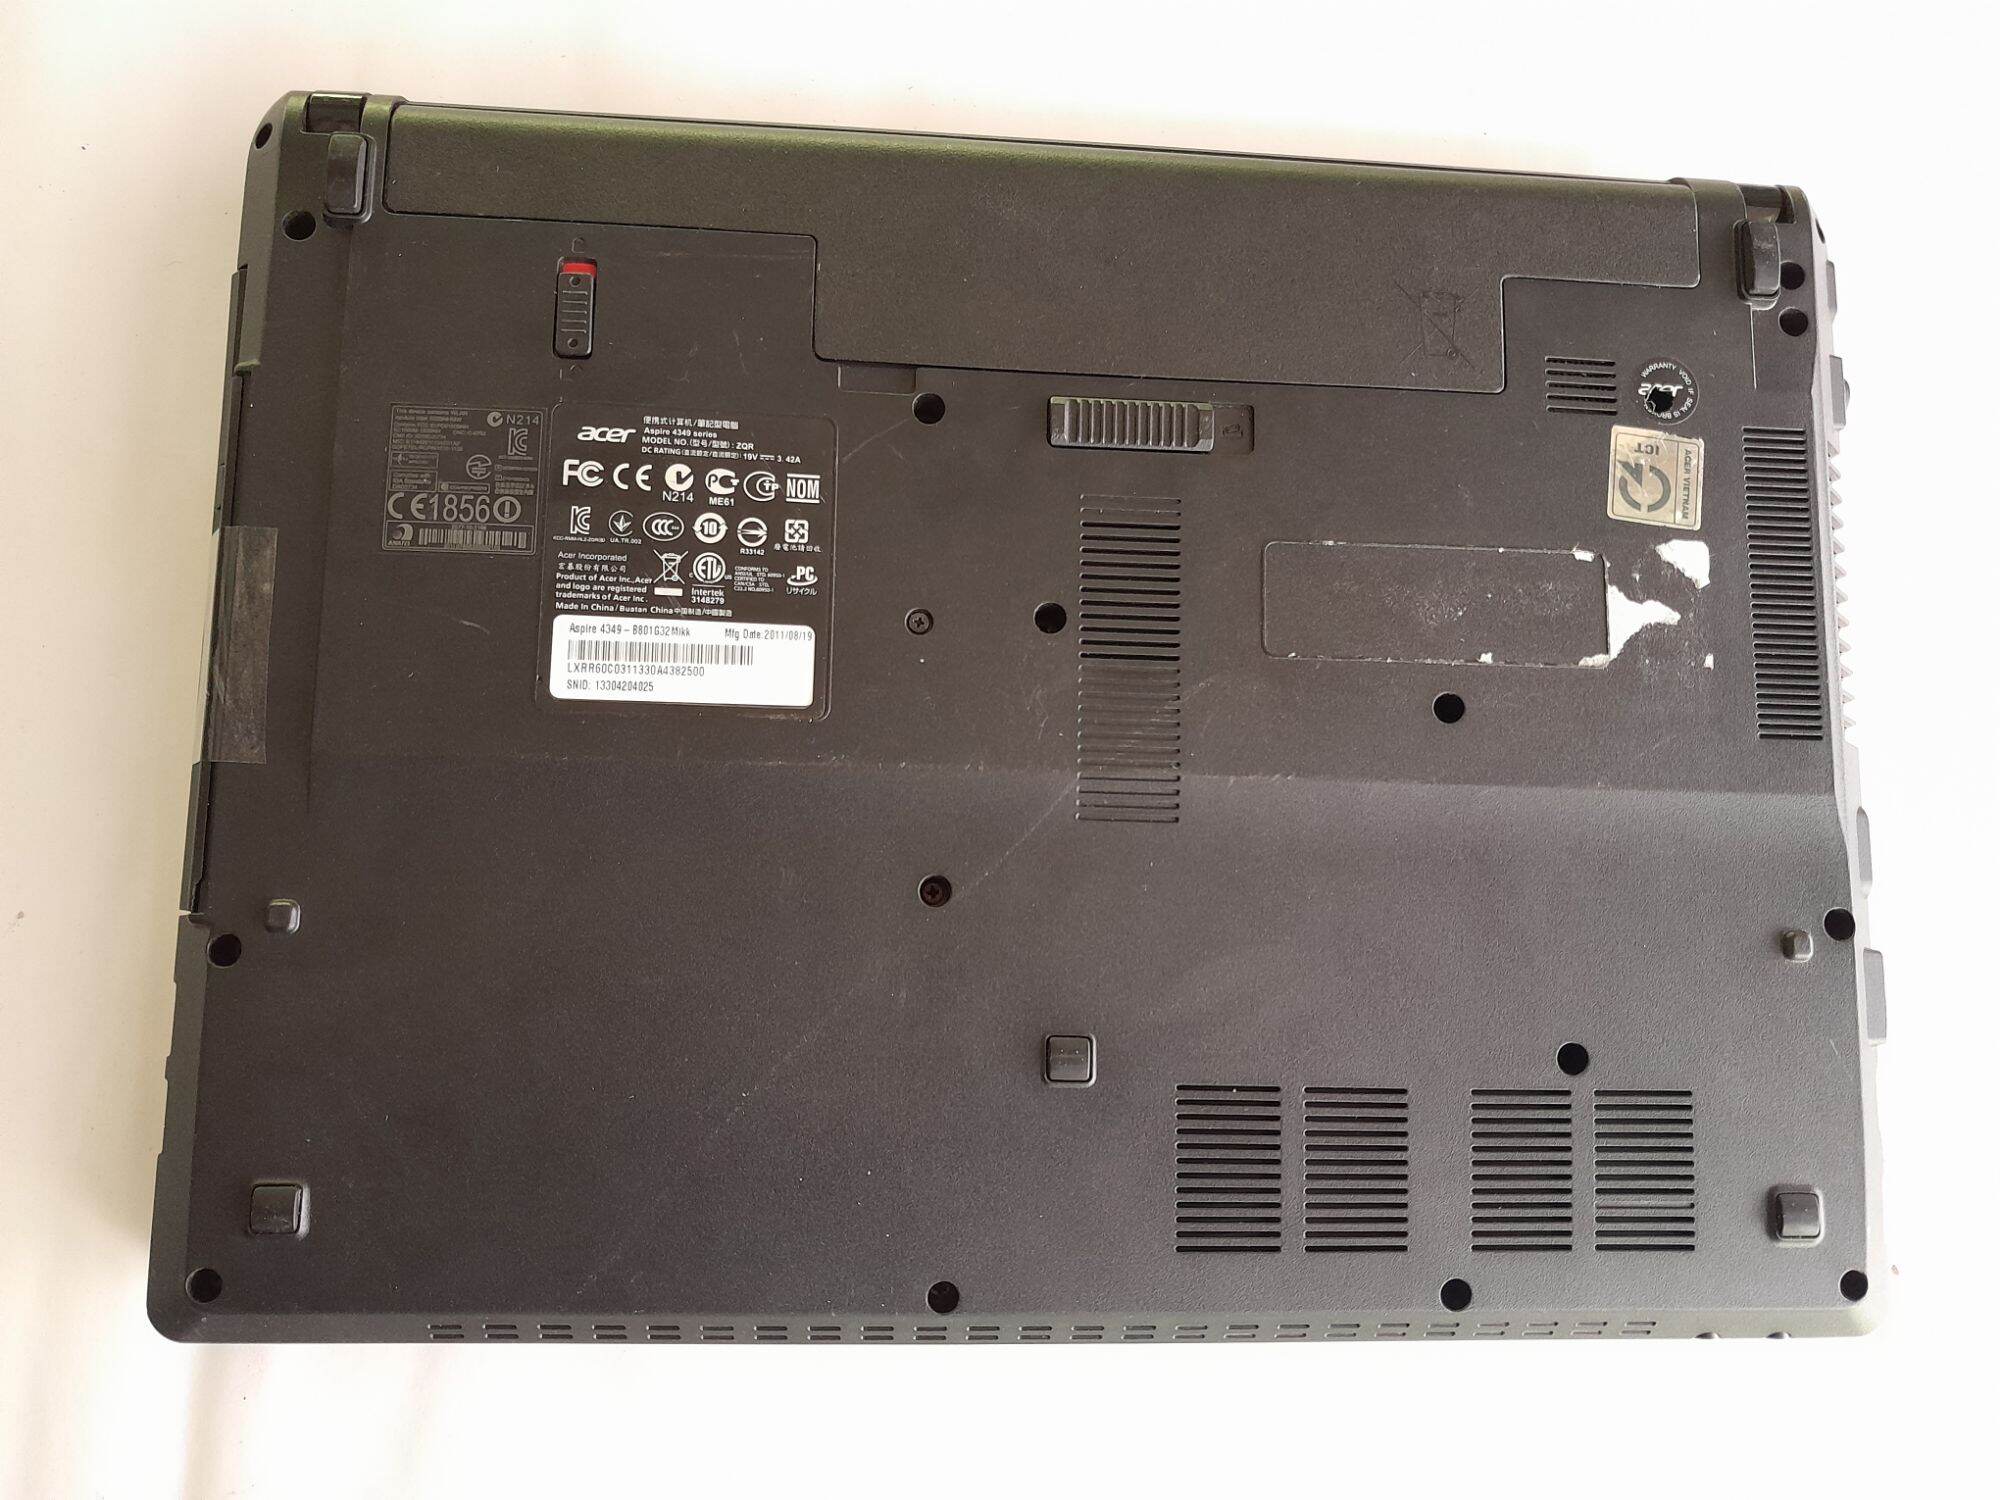 Bán Xác Laptop Acer 4349,  không lên hình. Giá bán 400k